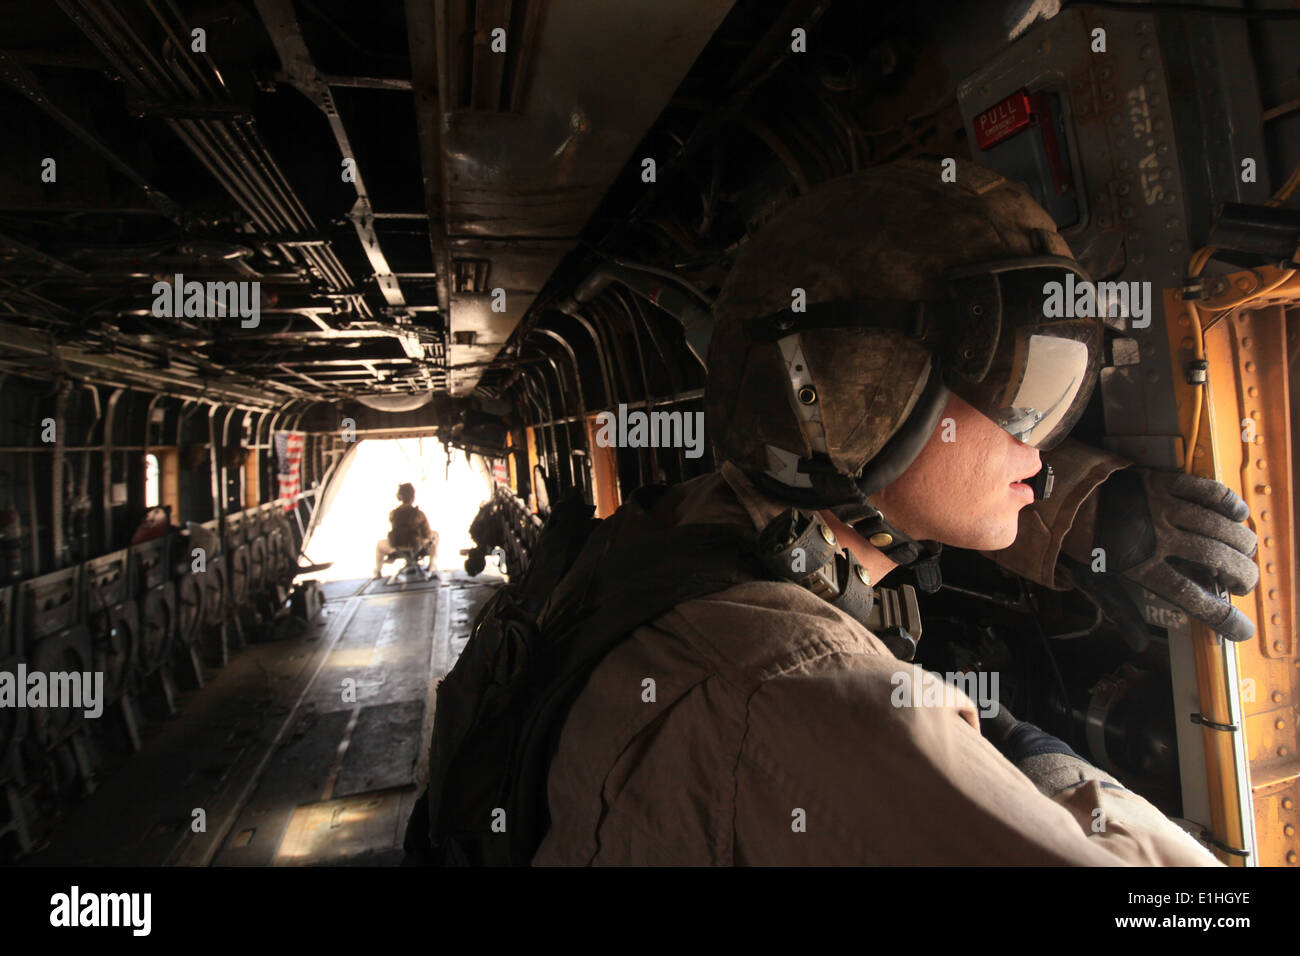 Kevin corporal A. Murphy, jefe de la tripulación HMH-362, 3ª Marine de alas de avión (adelante), explora en busca de actividad enemiga desde el tirador????? Foto de stock